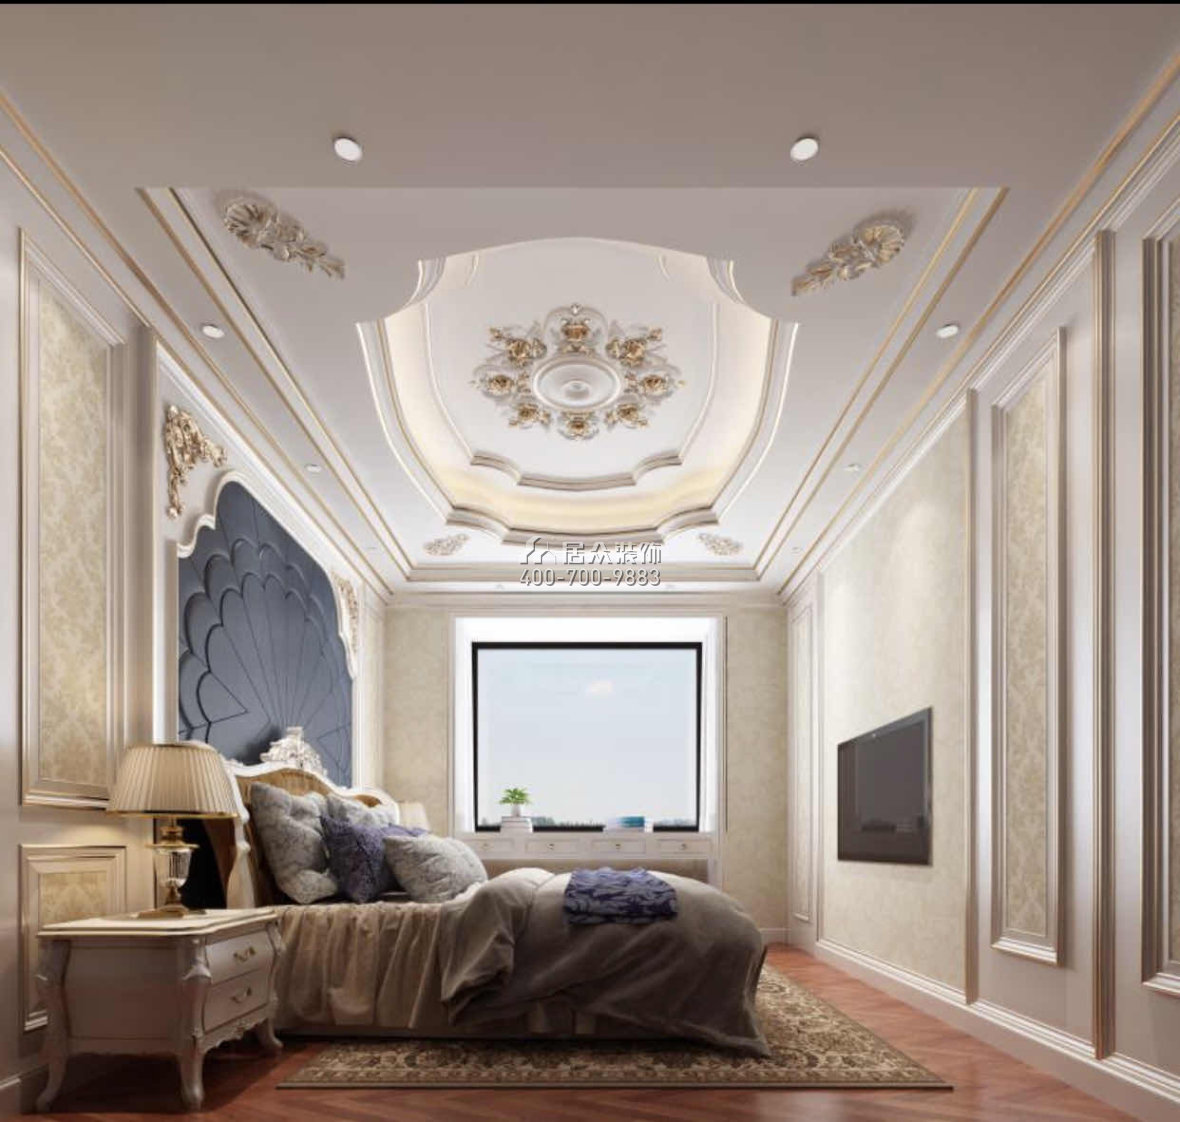 新圩自建别墅580平方米欧式风格别墅户型卧室装修效果图